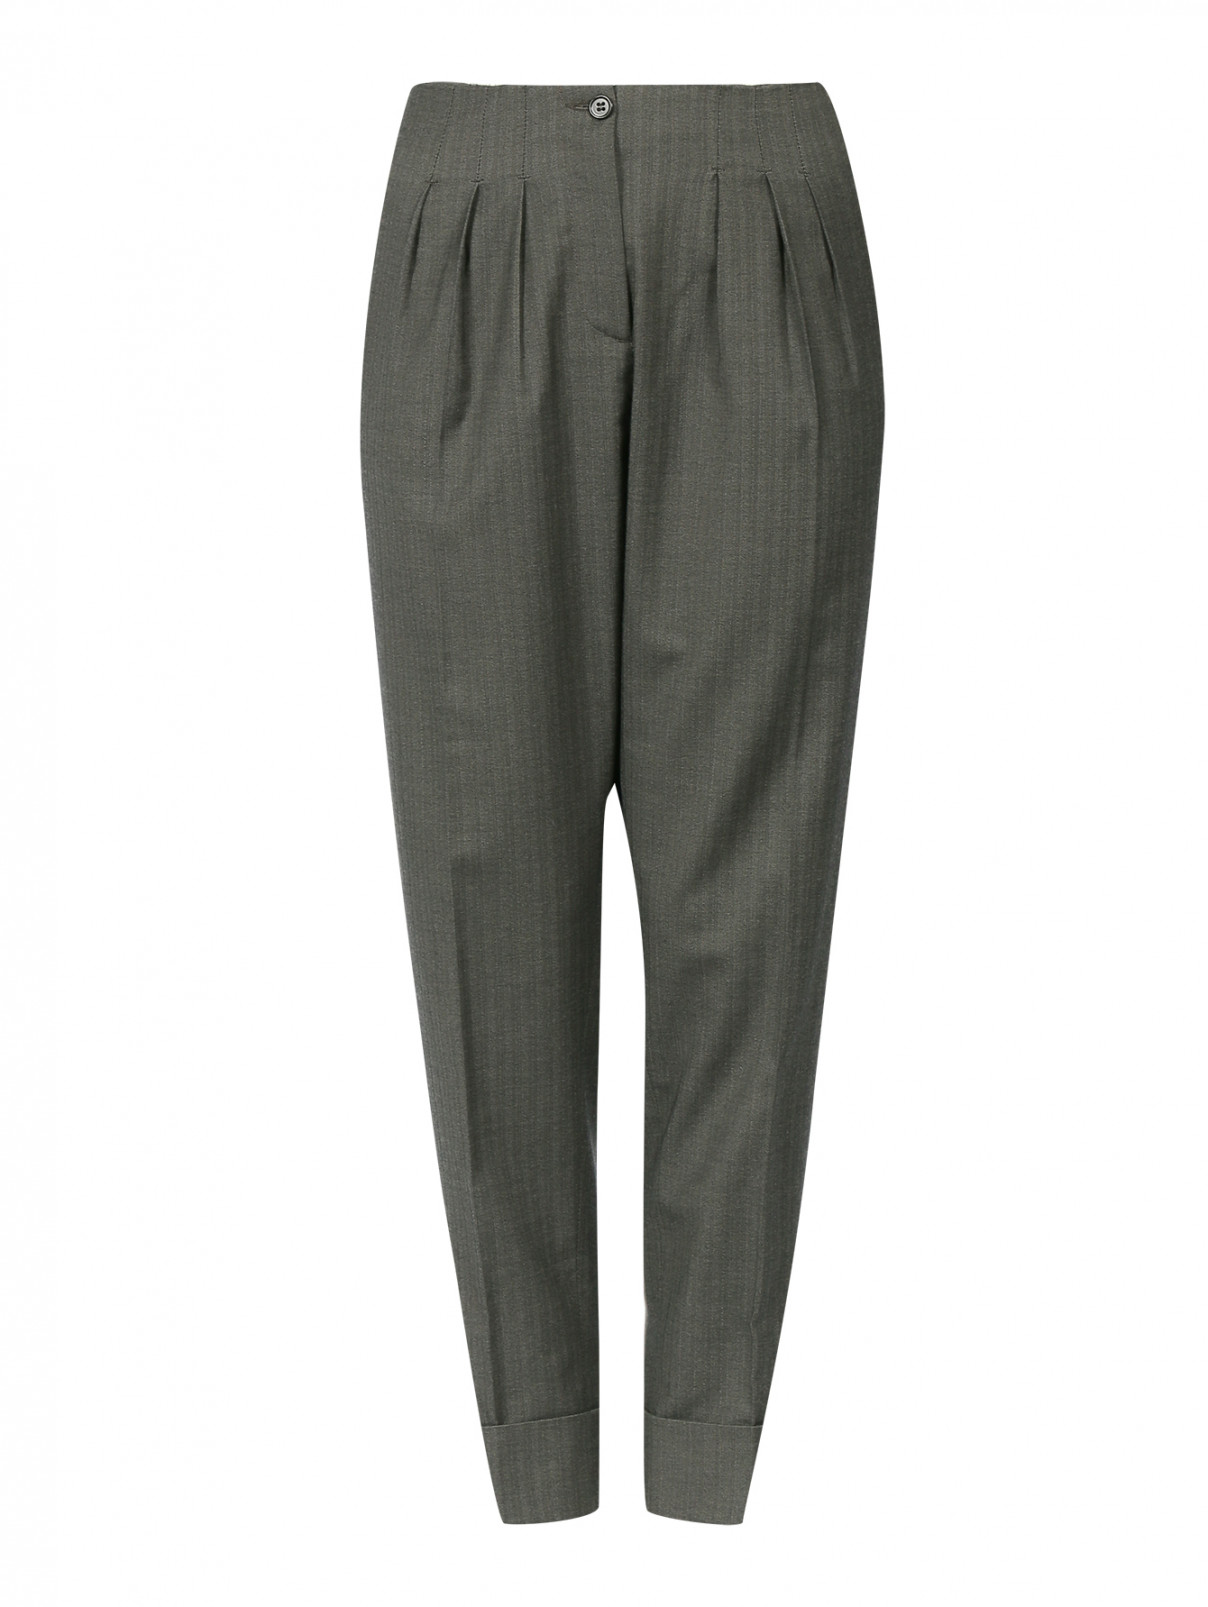 Шерстяные брюки с высокой посадкой Antonio Marras  –  Общий вид  – Цвет:  Серый